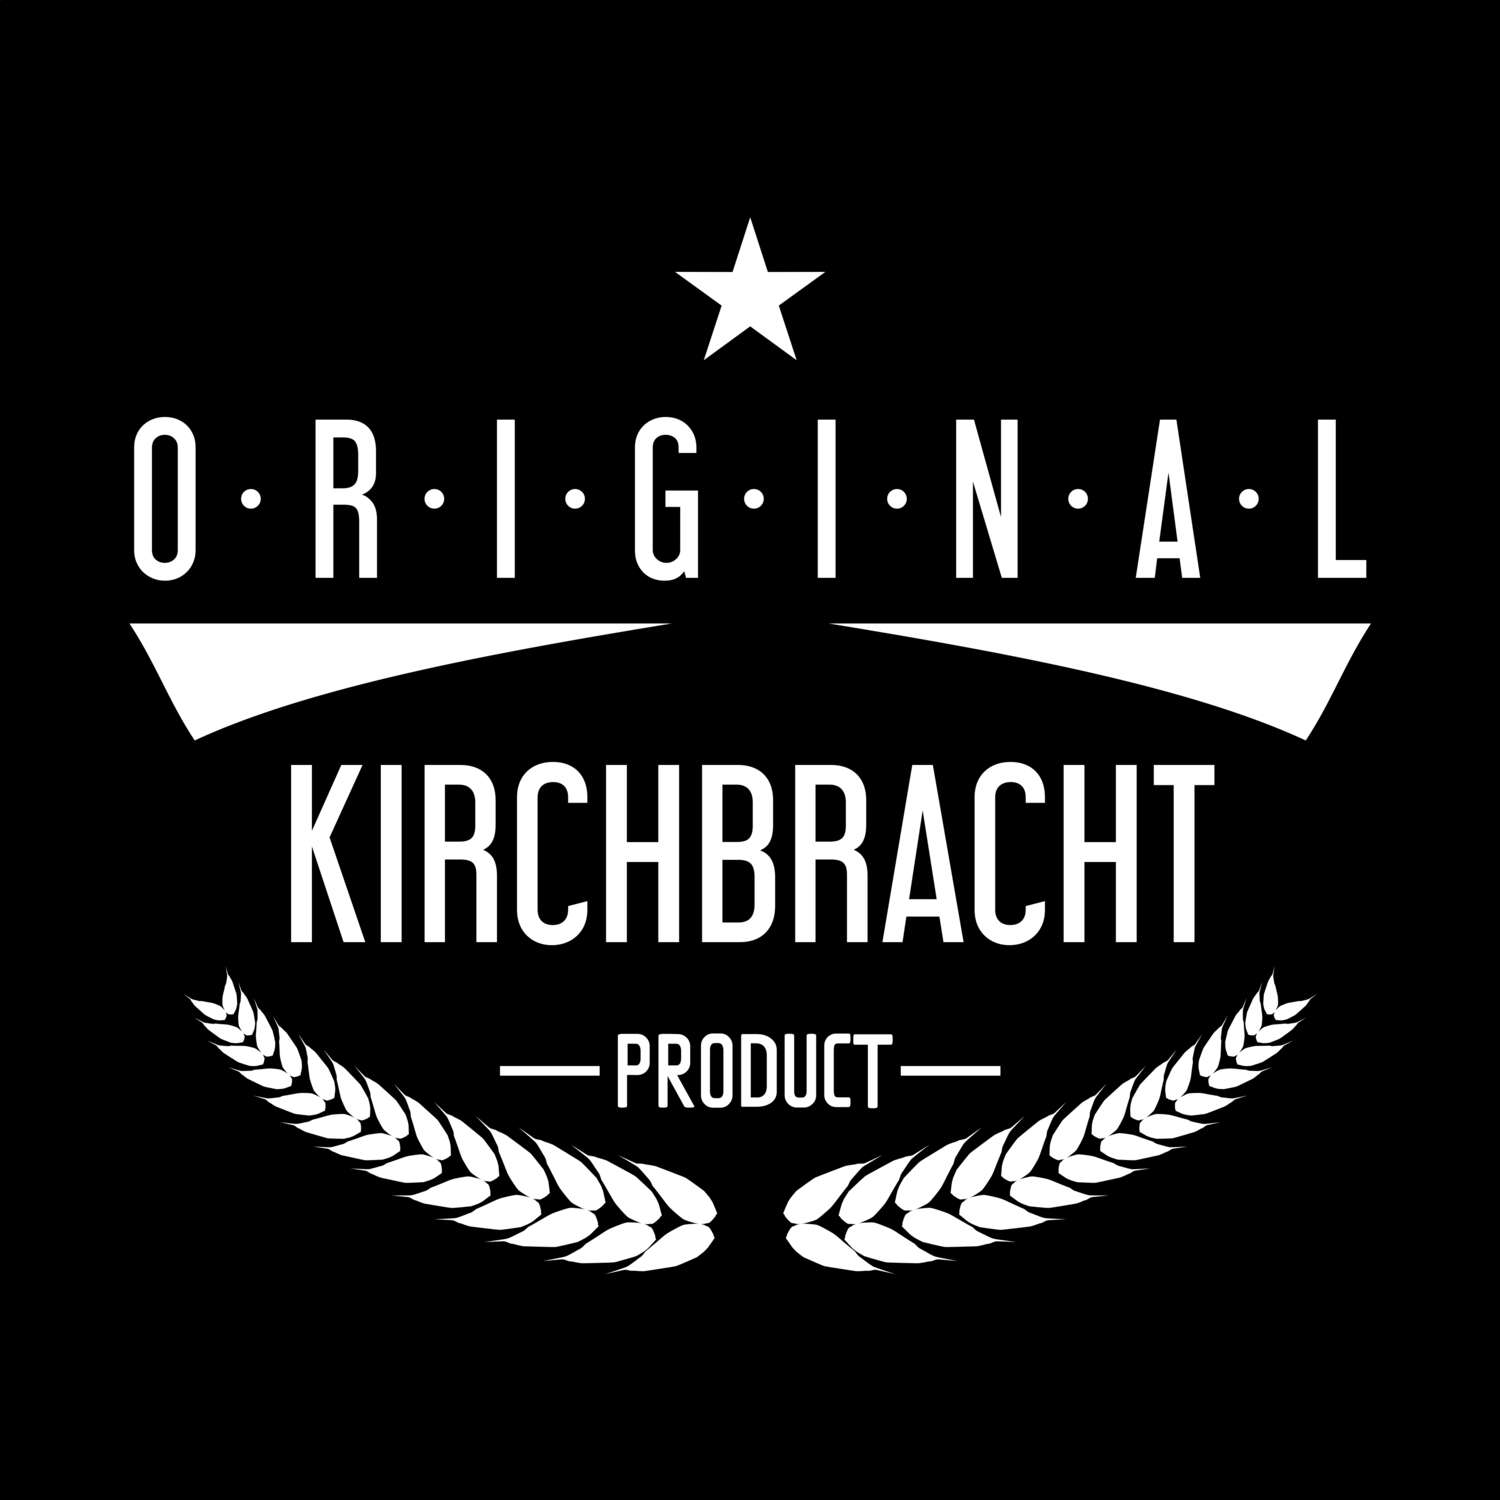 Kirchbracht T-Shirt »Original Product«